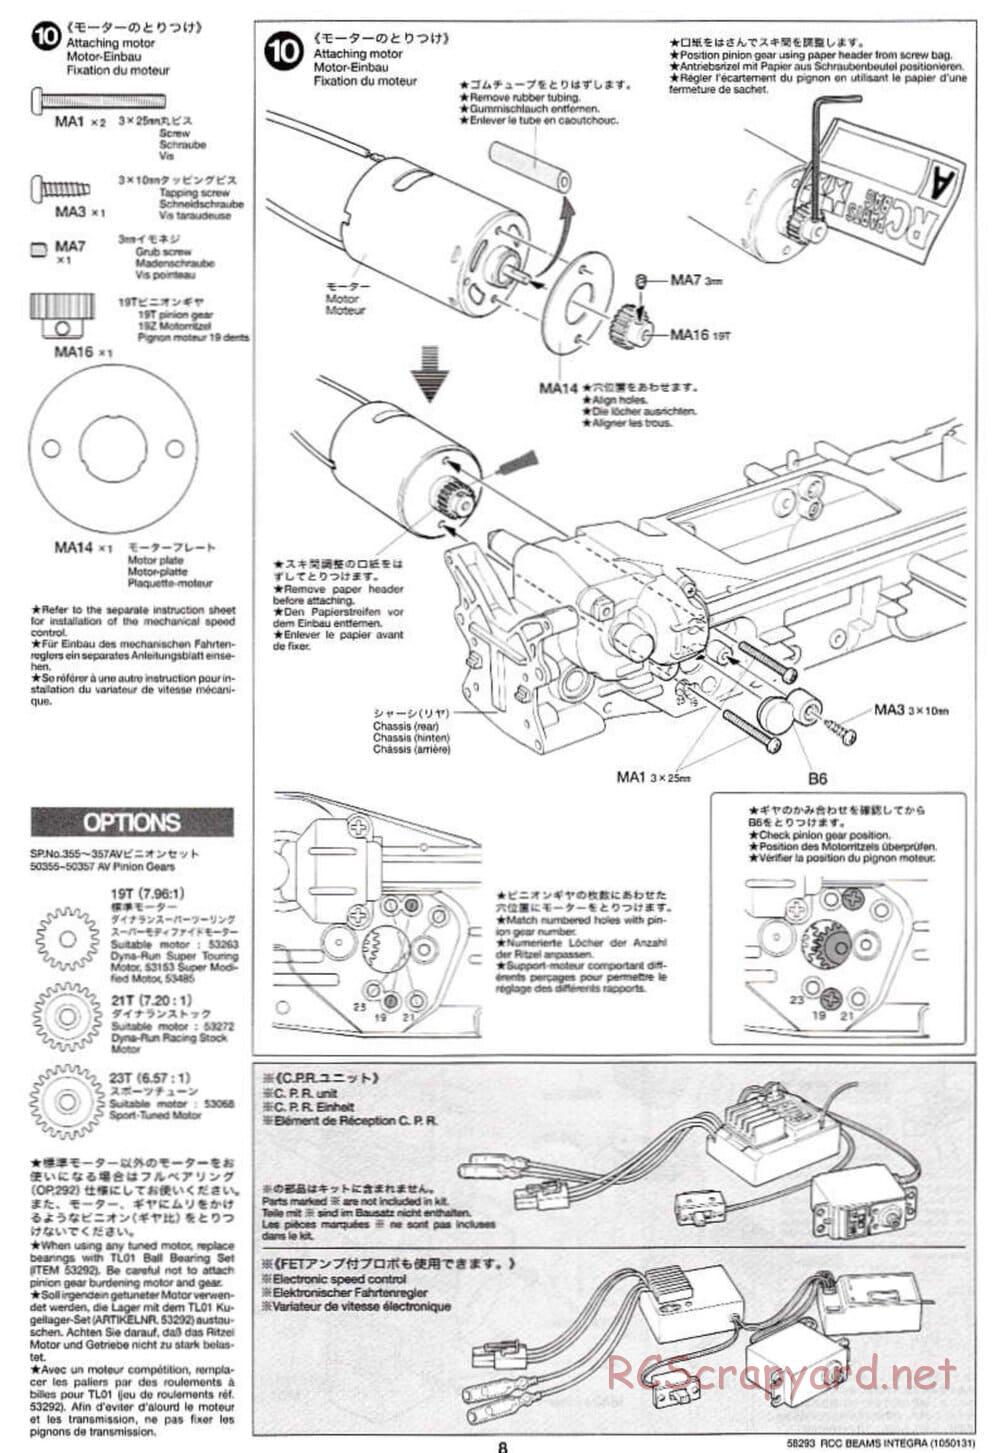 Tamiya - Beams Integra - TL-01 LA Chassis - Manual - Page 8